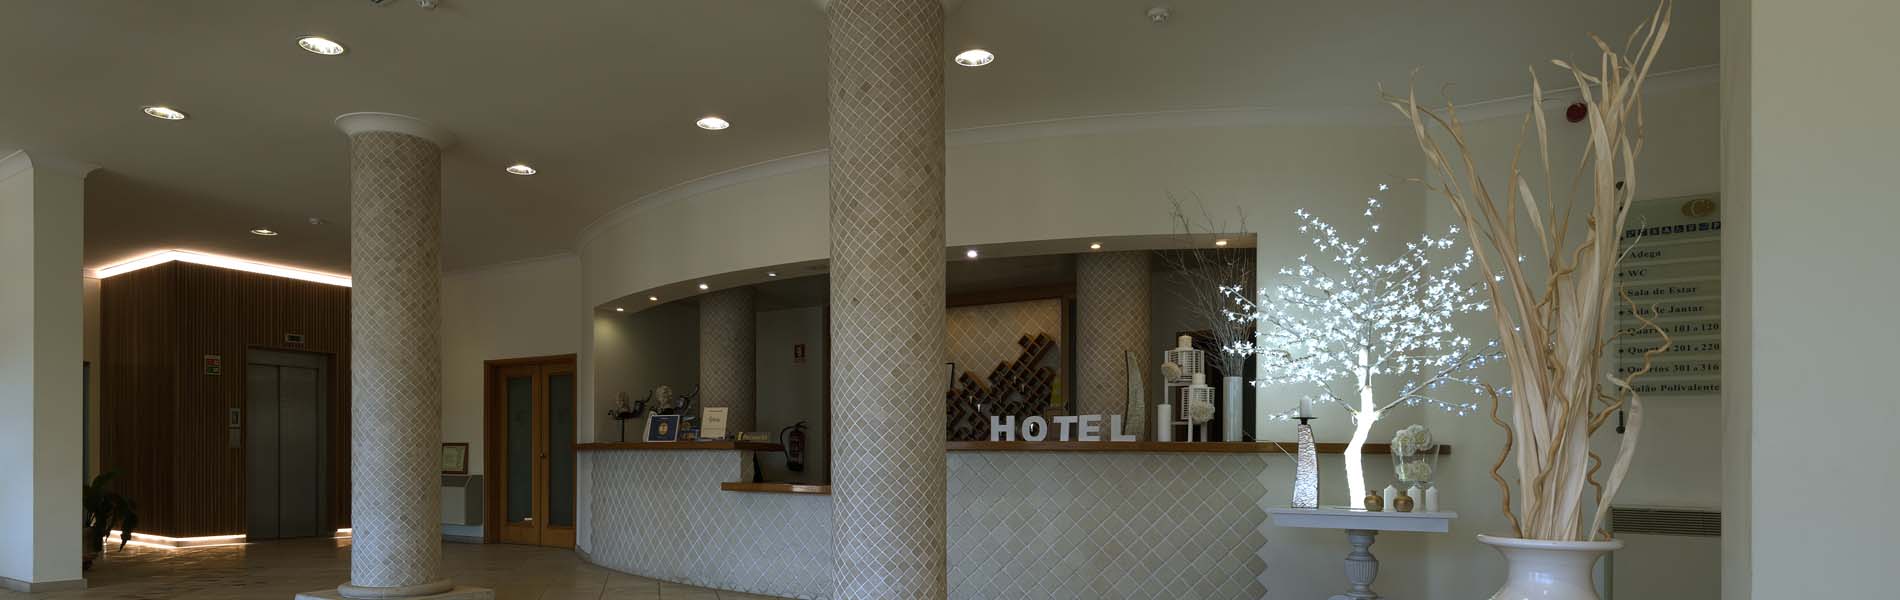 Hotel Cabecinho  header